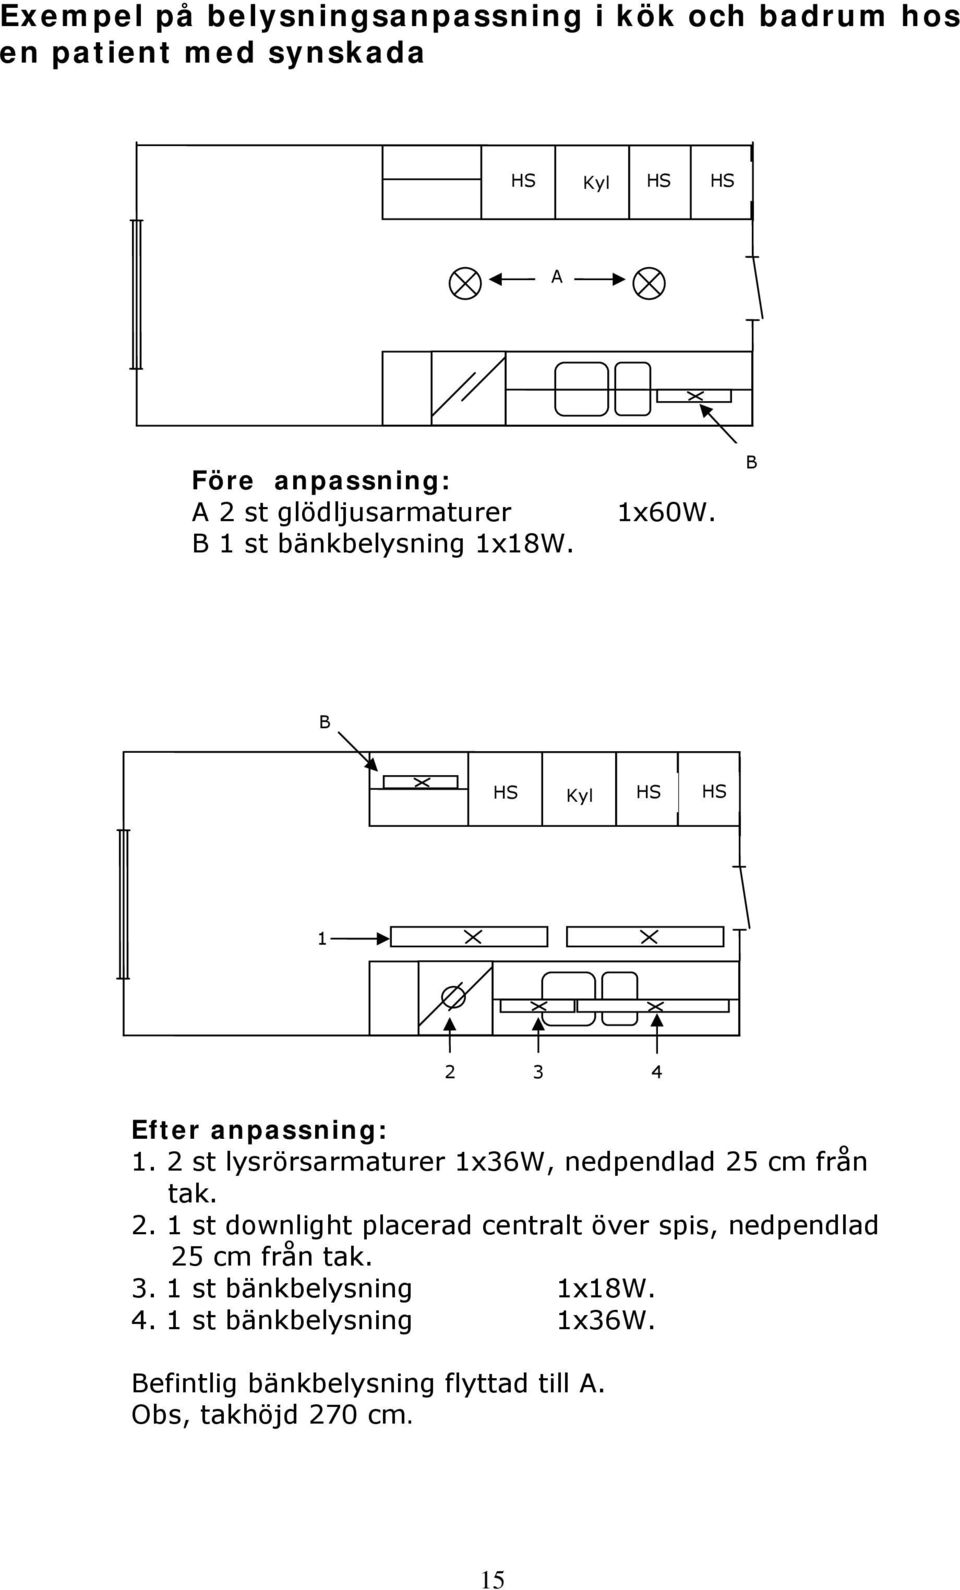 2 st lysrörsarmaturer 1x36W, nedpendlad 25 cm från tak. 2. 1 st downlight placerad centralt över spis, nedpendlad 25 cm från tak.